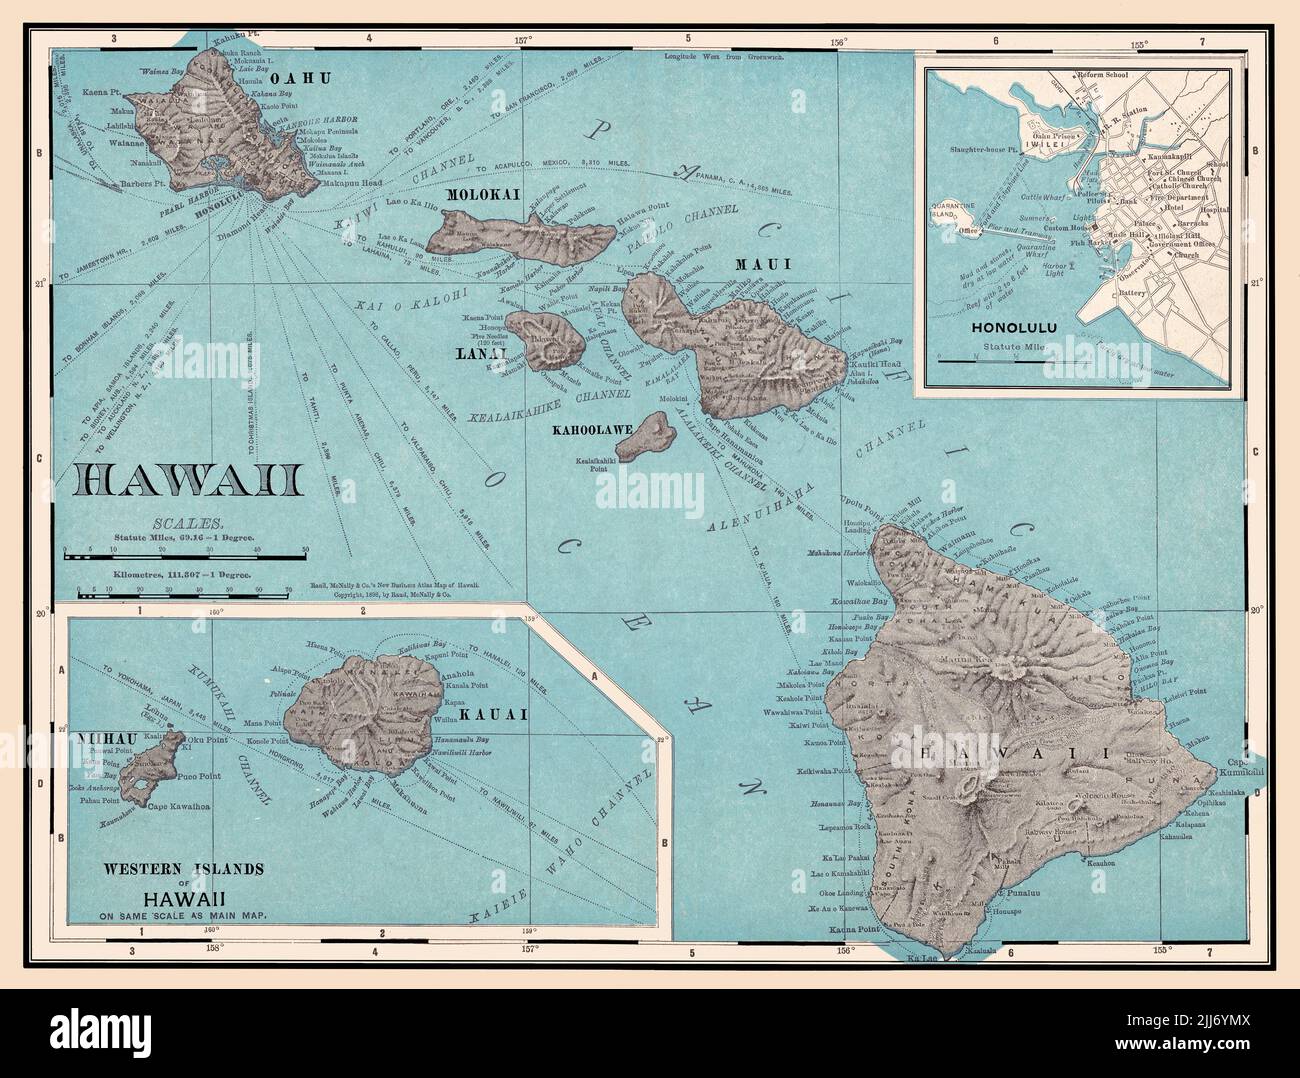 Eine restaurierte, erweiterte Reproduktion einer antiken Karte der Hawaiianischen Inseln aus dem Jahr 1898 mit Entfernungen zu verschiedenen Zielen. In der oberen rechten Ecke befindet sich eine Karte mit der Stadt Honolulu. Stockfoto